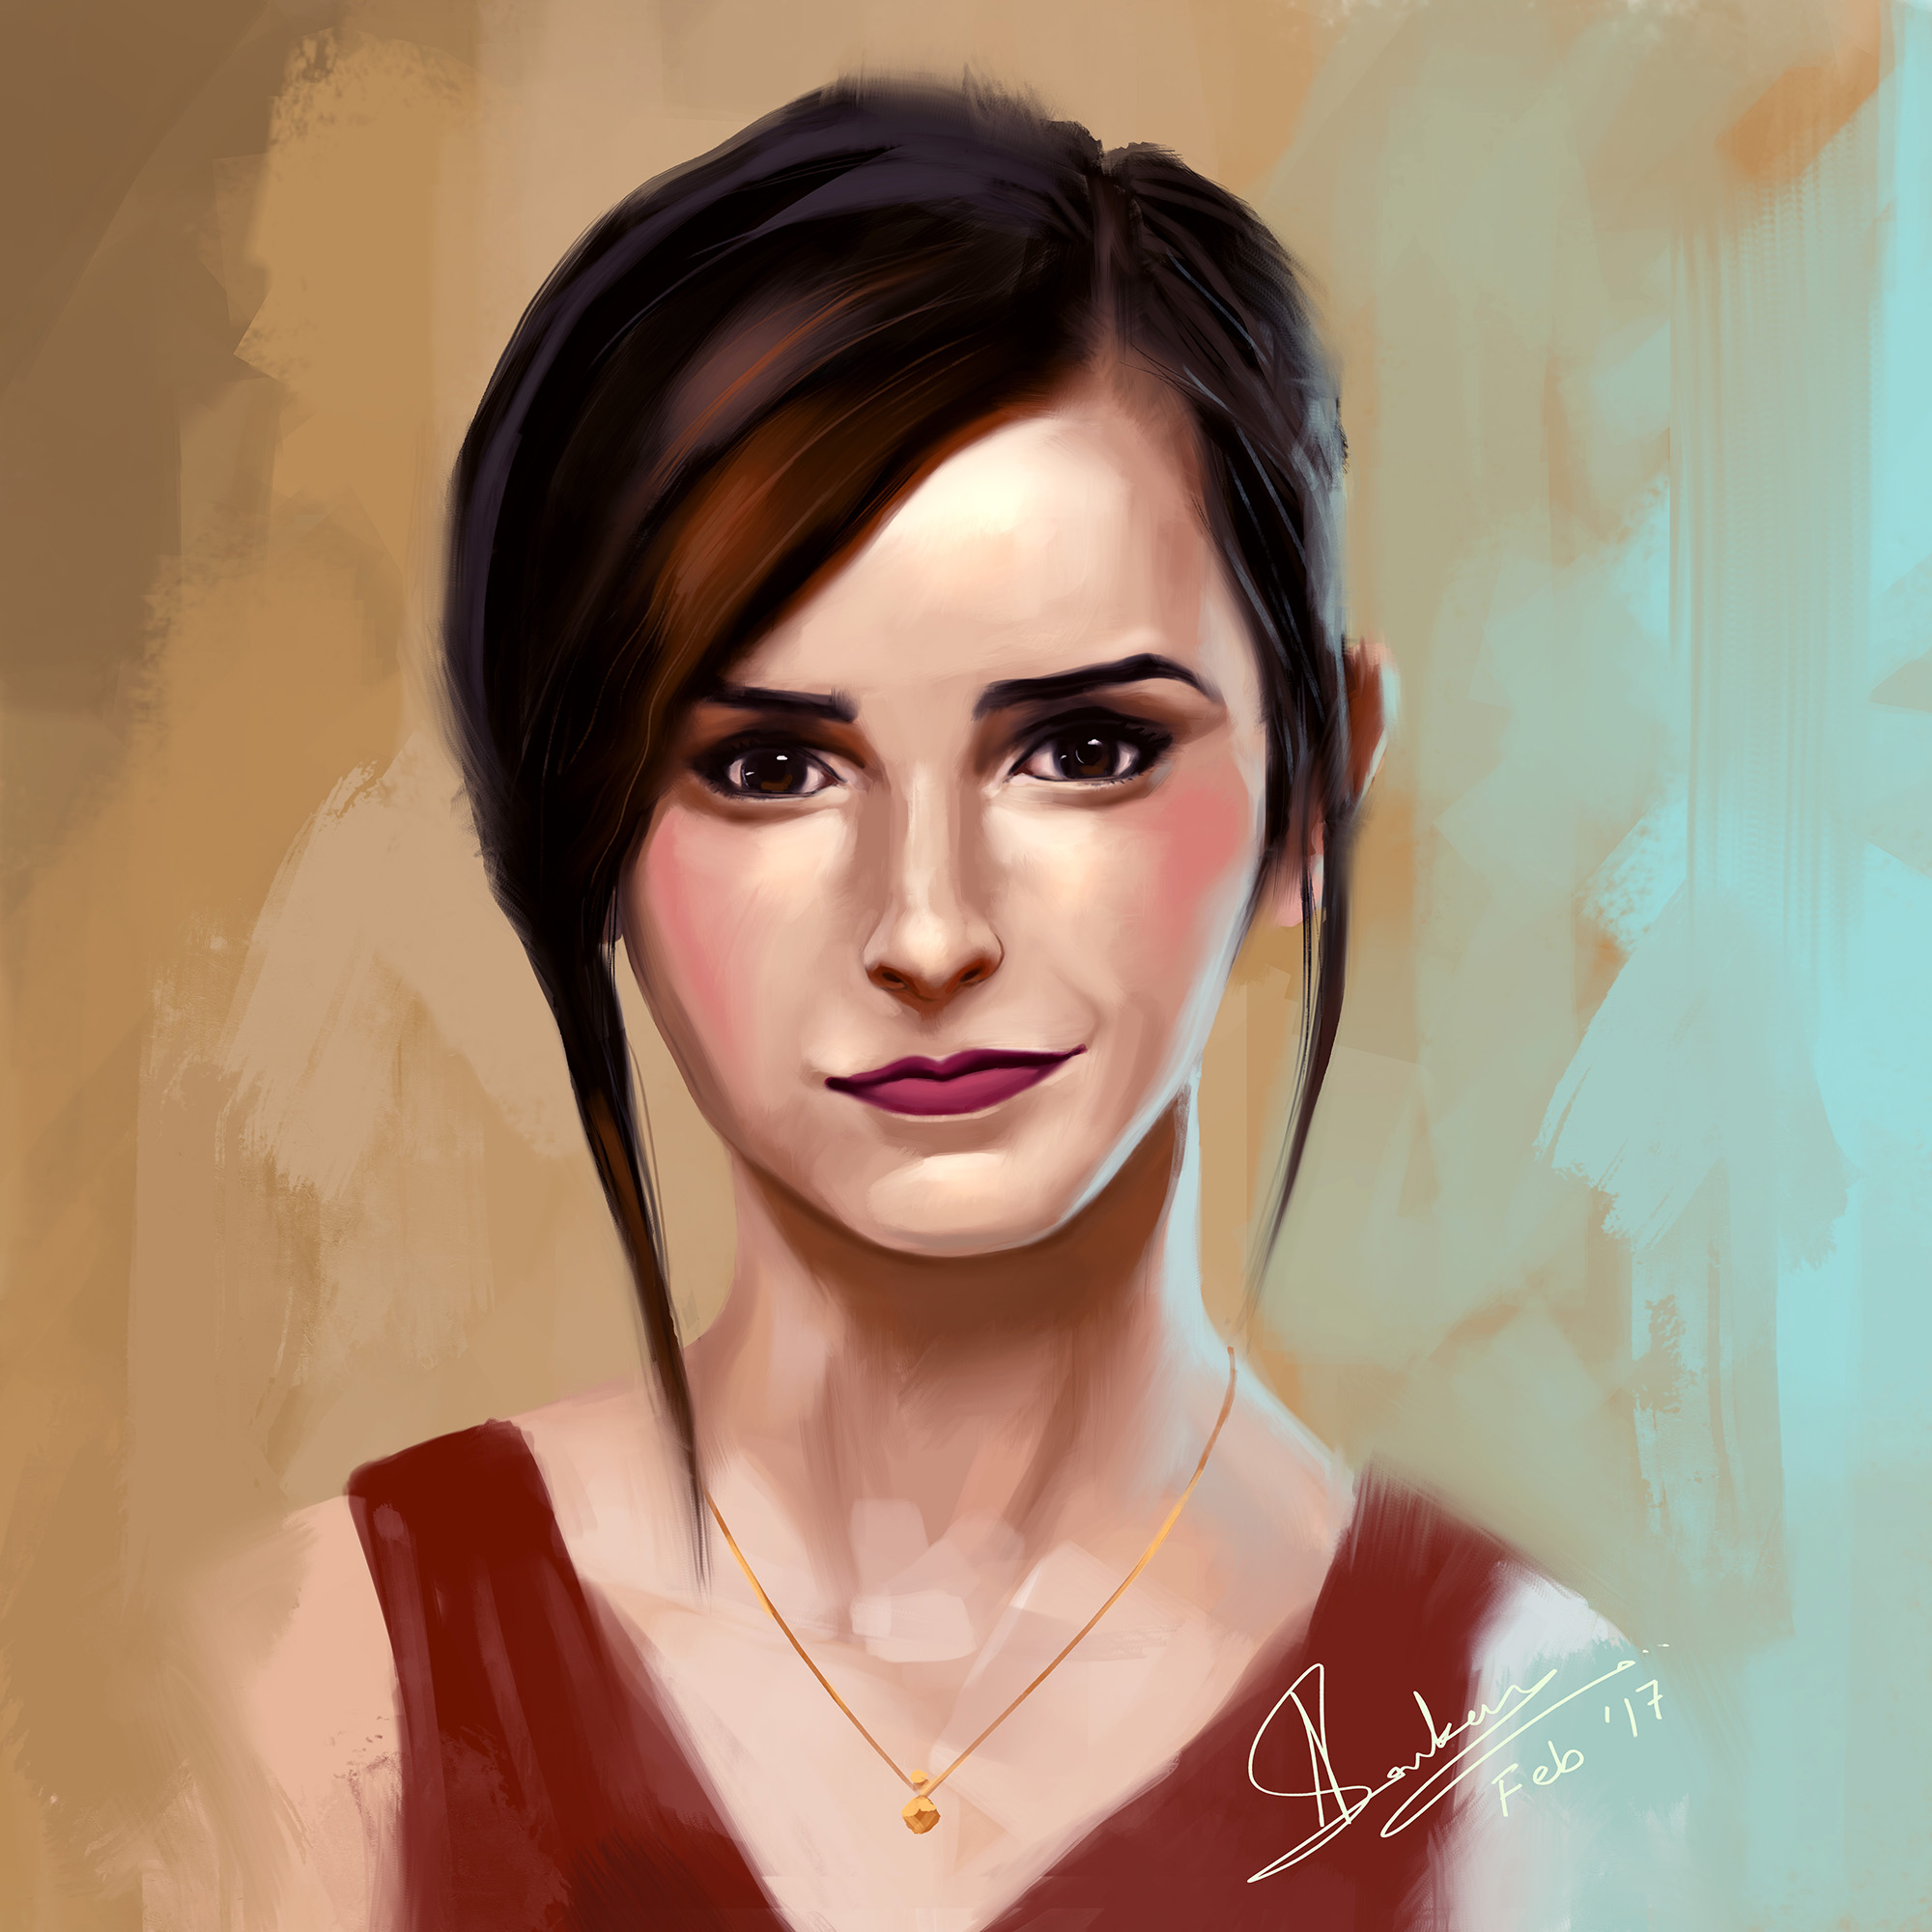 Emma Watson Fanart by Jit-Art on DeviantArt